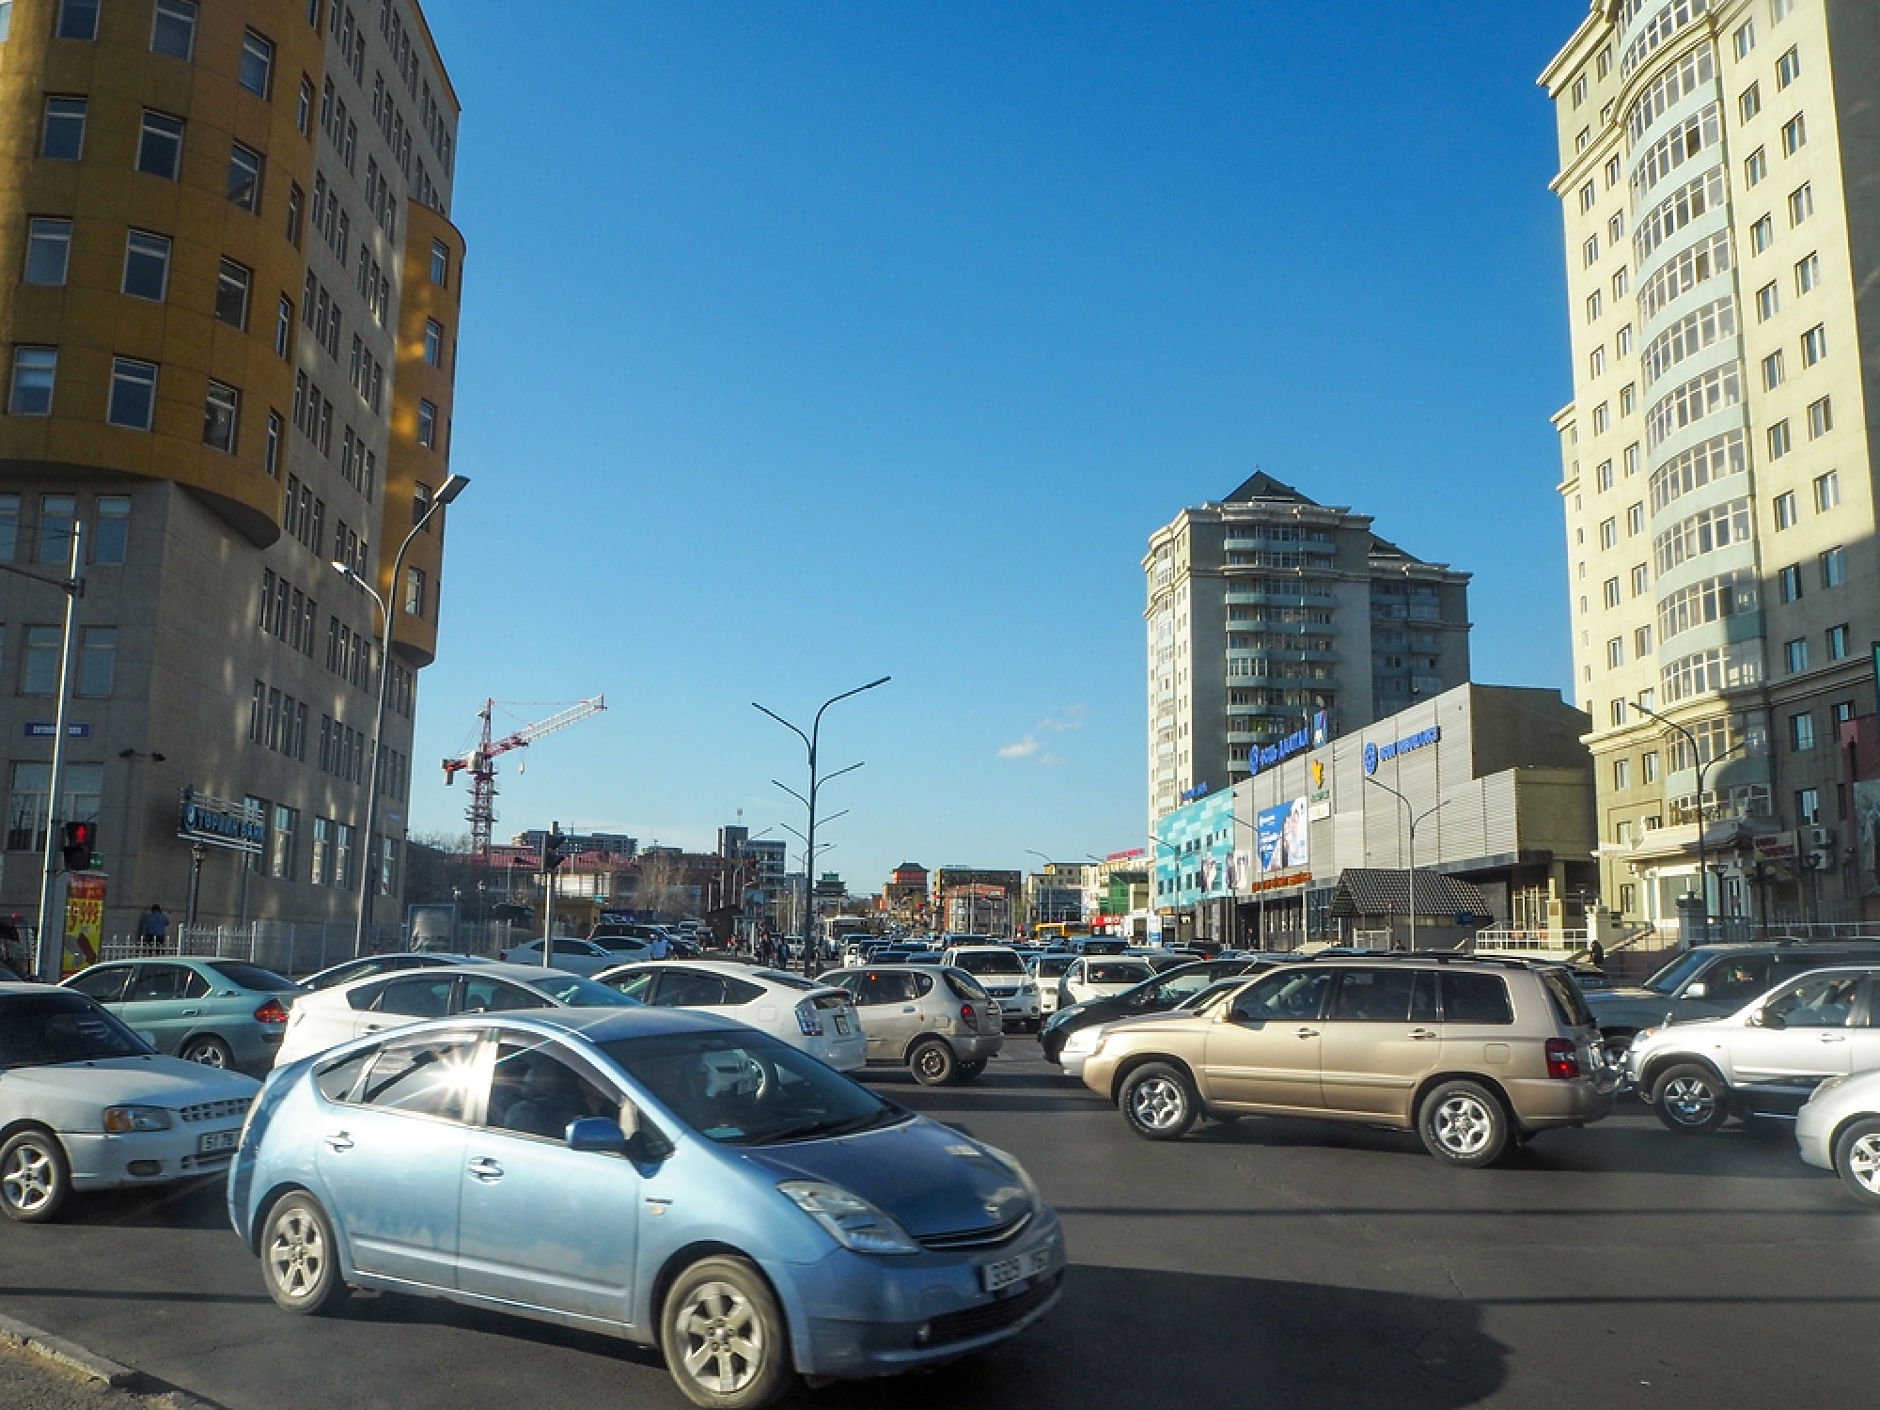 Монголската столица ще се бори със задръстванията чрез ограничаване на вноса на автомобили